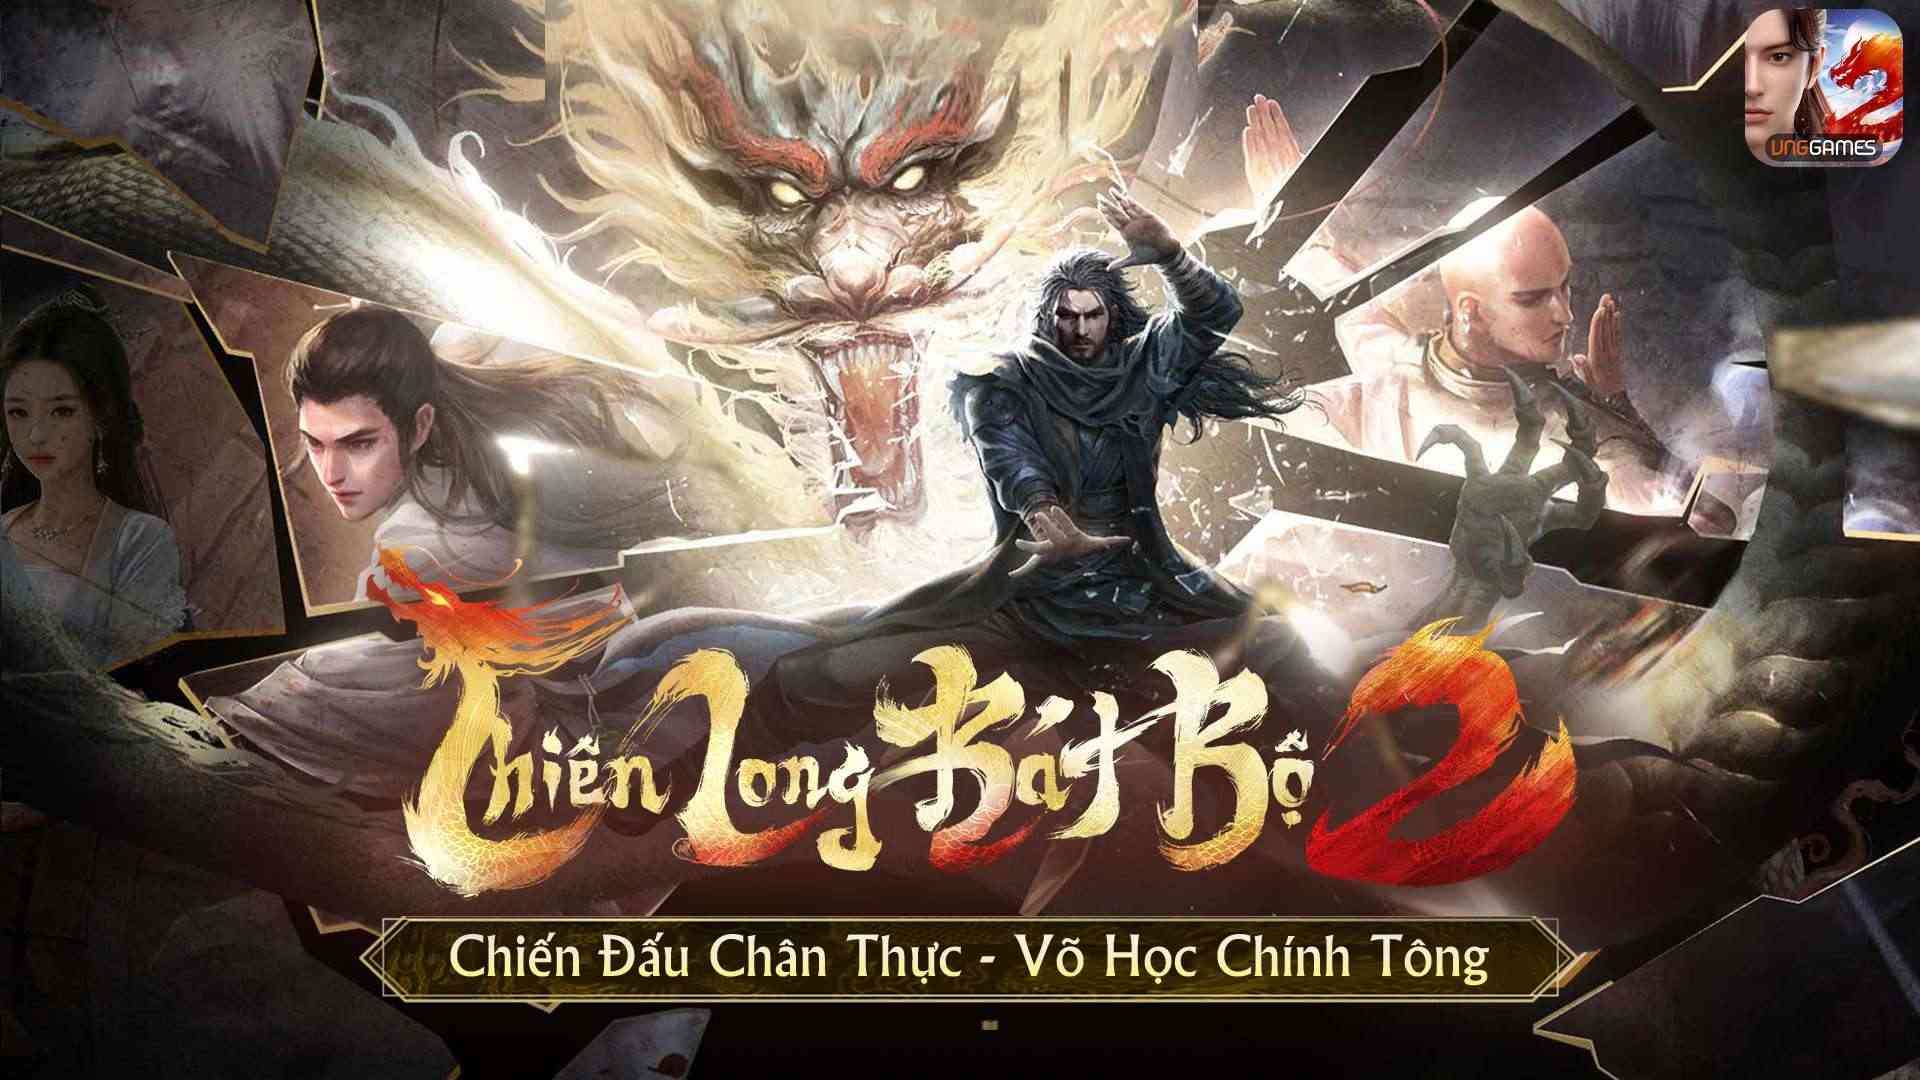 Thiên Long Bát Bộ 2 VNG – tựa game tiếp nối hành trình 15 năm của dòng game Thiên Long Bát Bộ tại Việt Nam